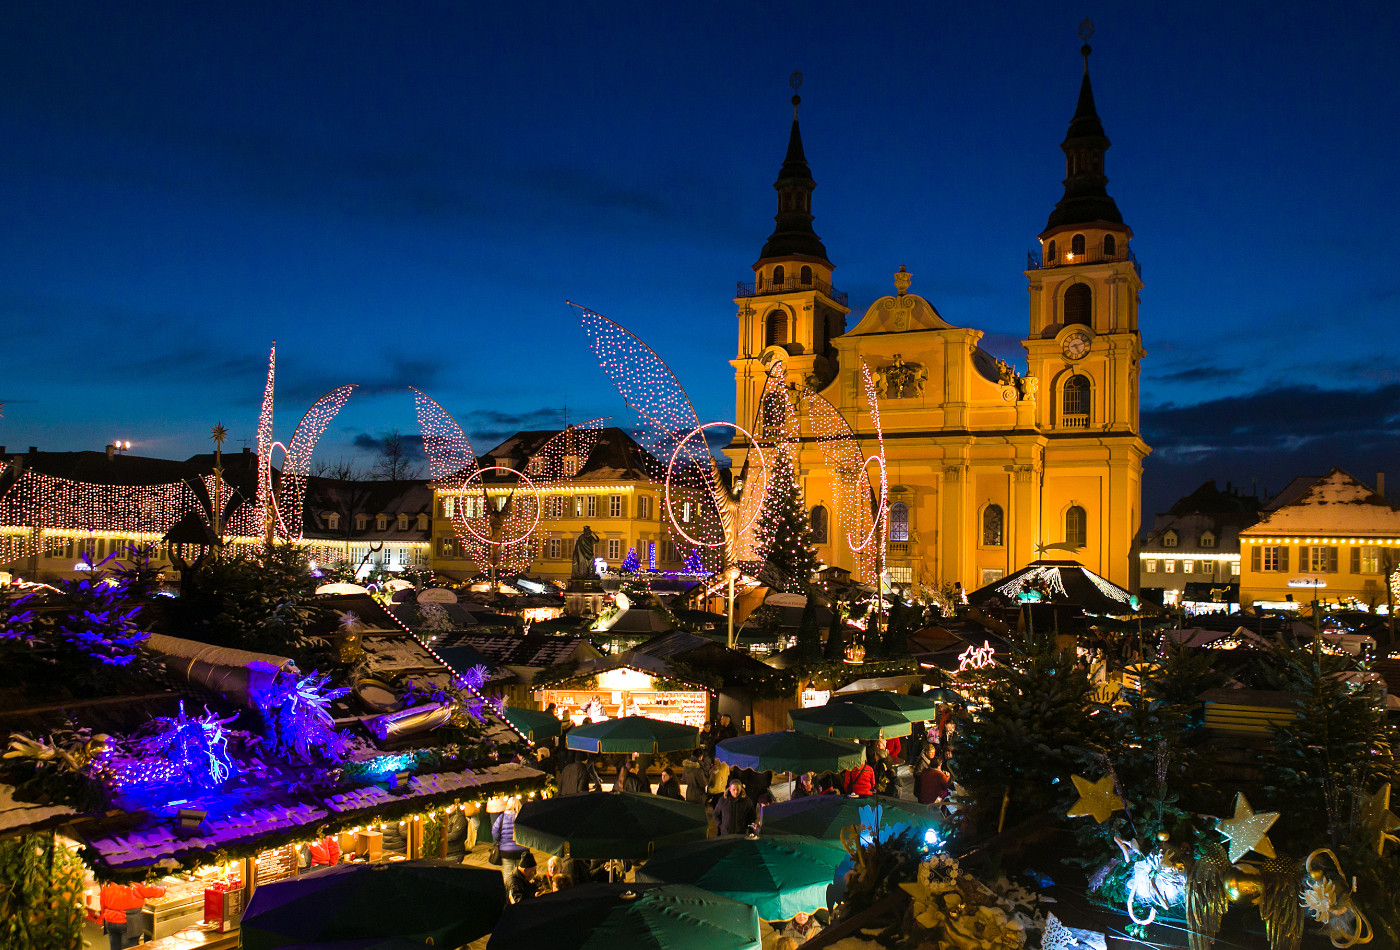 Bild vom Schloss Ludwigsburg mit Weihnachtsmarkt